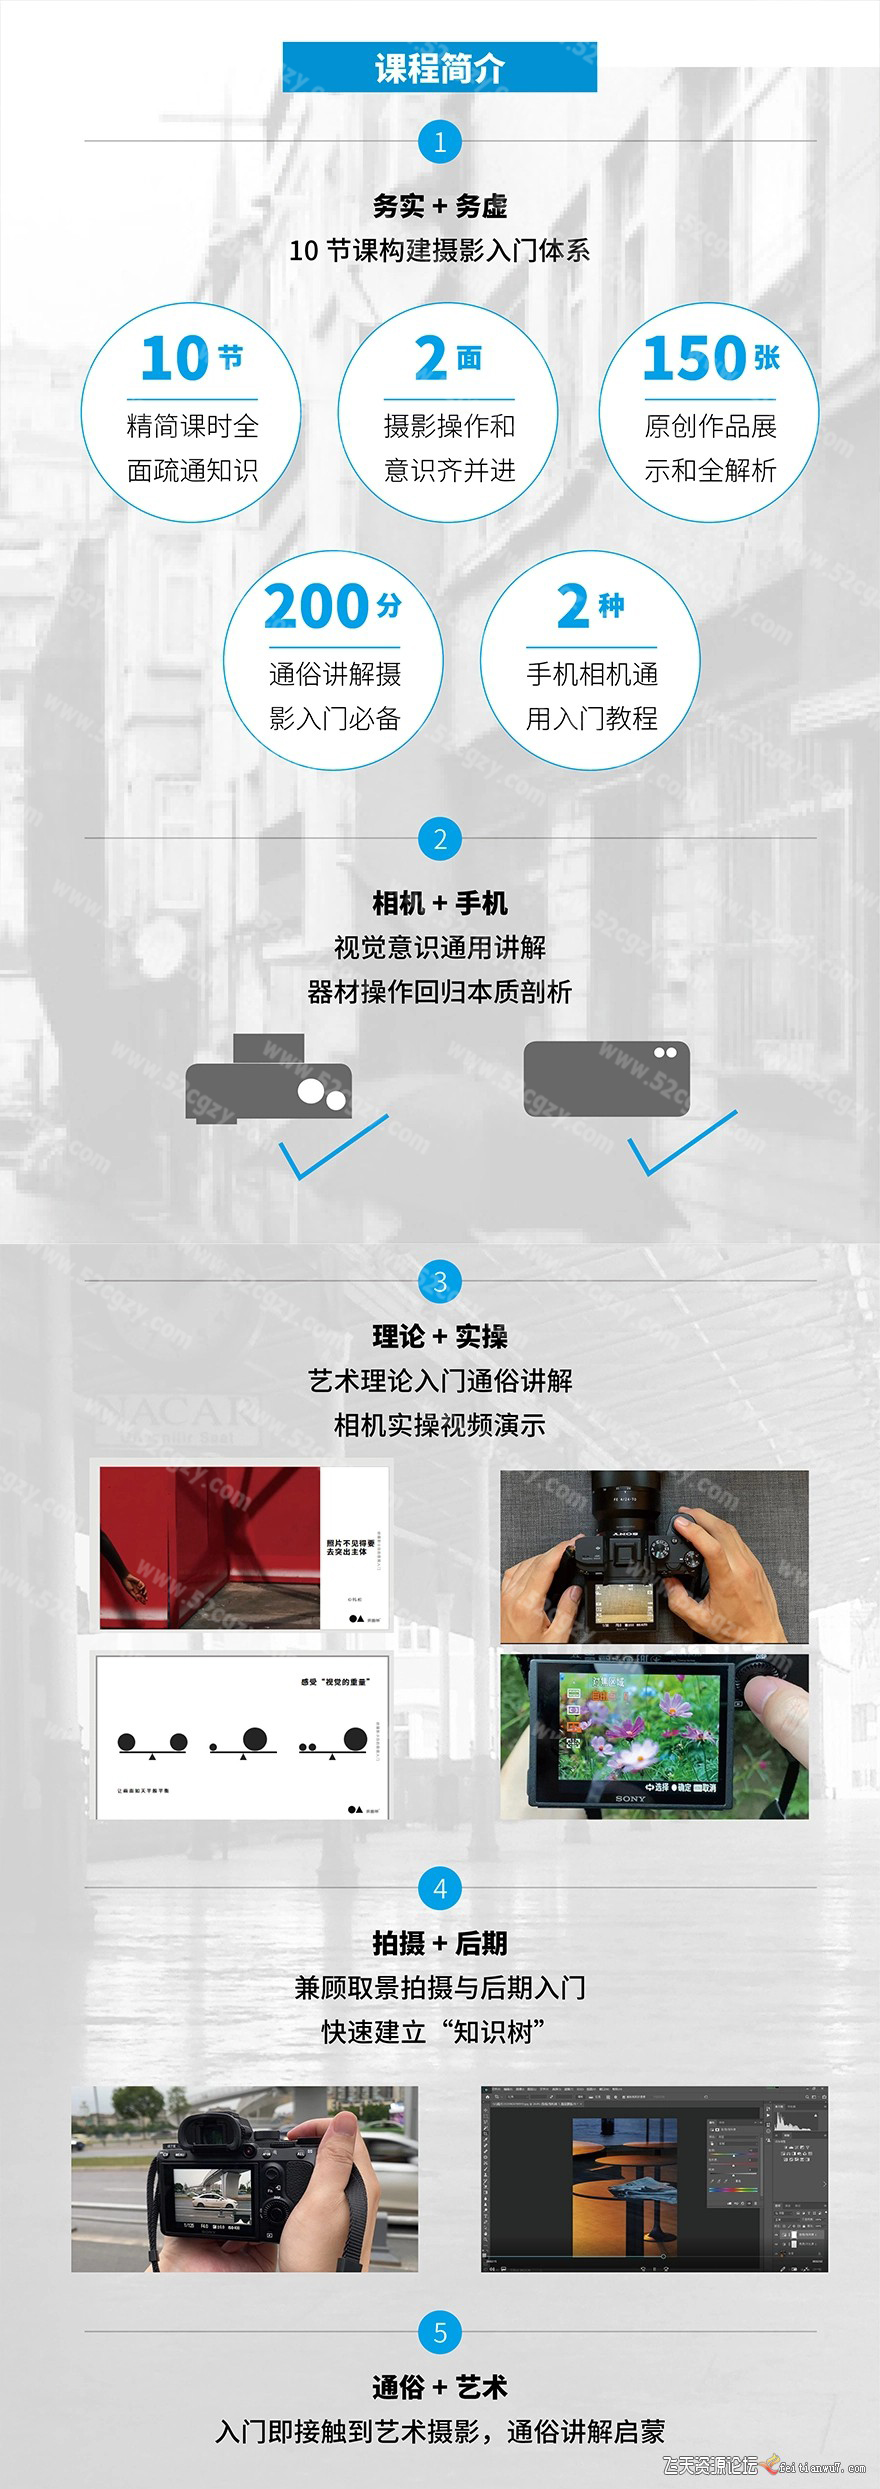 给摄影小白的极简入门中文教程 摄影 第3张